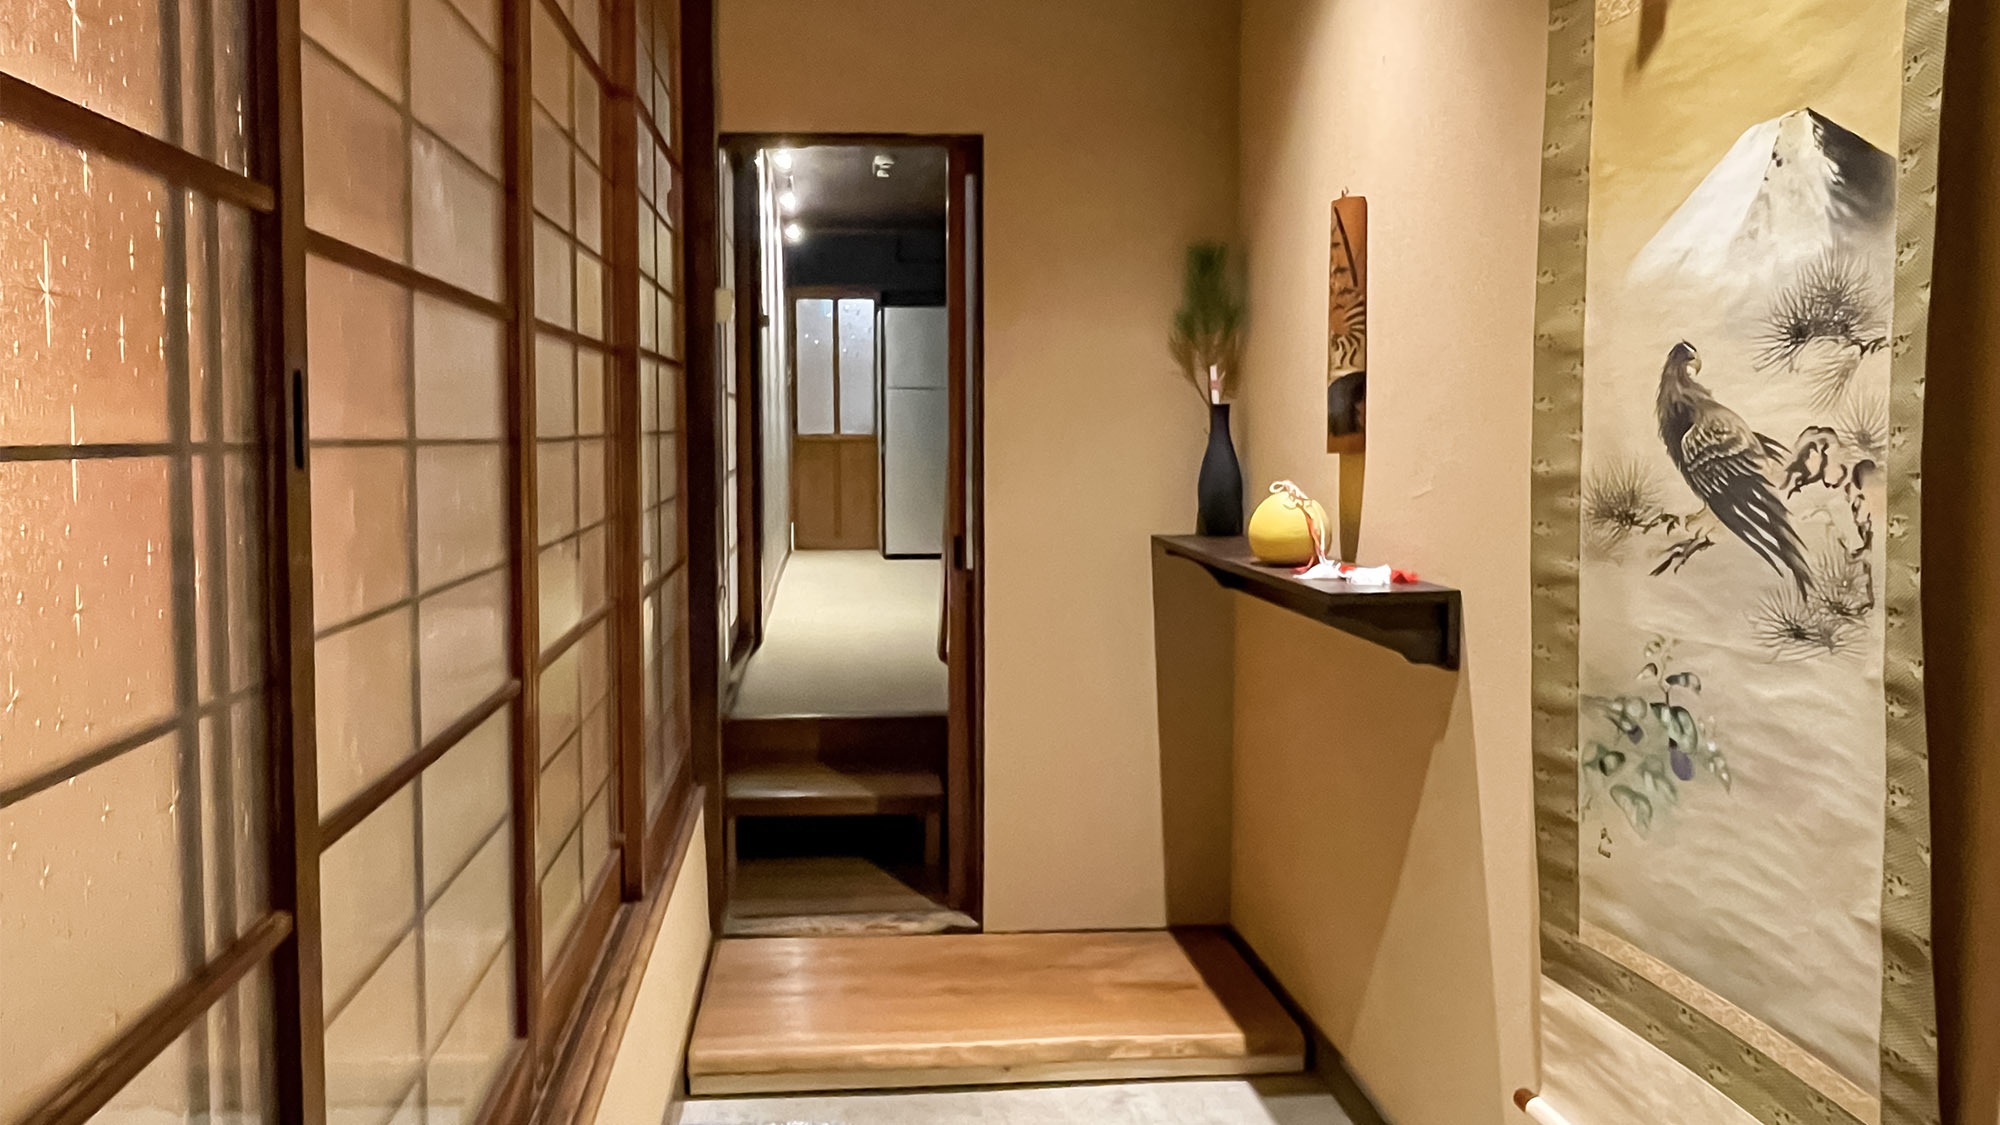 ・＜1F玄関＞昭和初期の日本家屋の良さが残り懐かしさを感じます